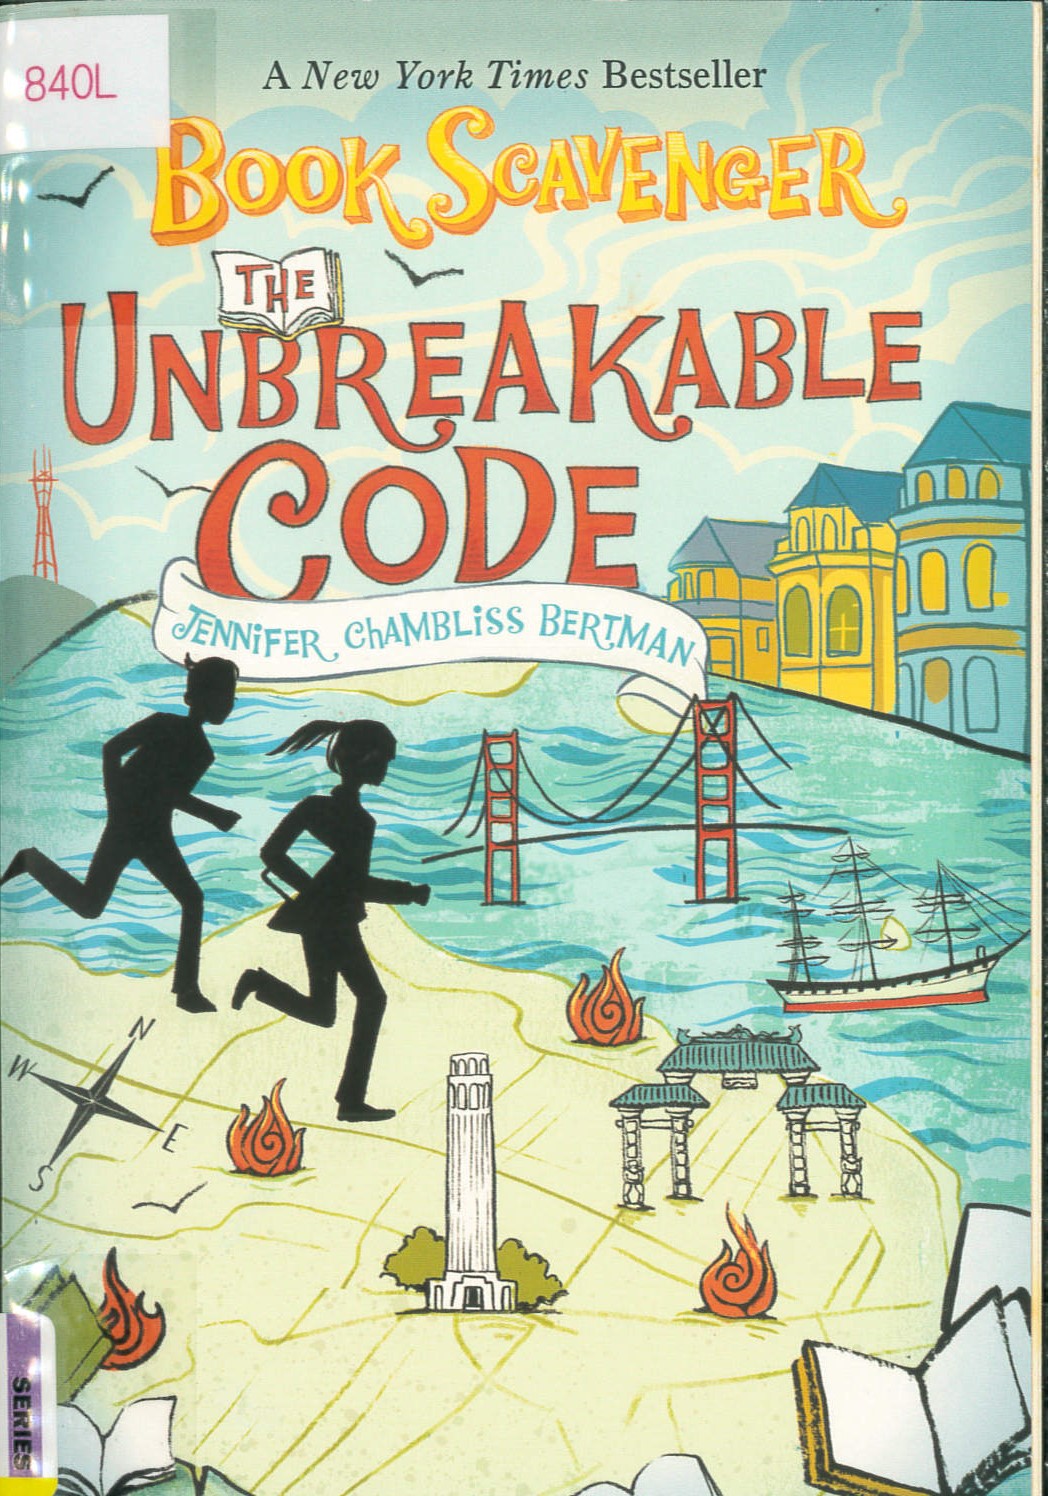 The unbreakable code /